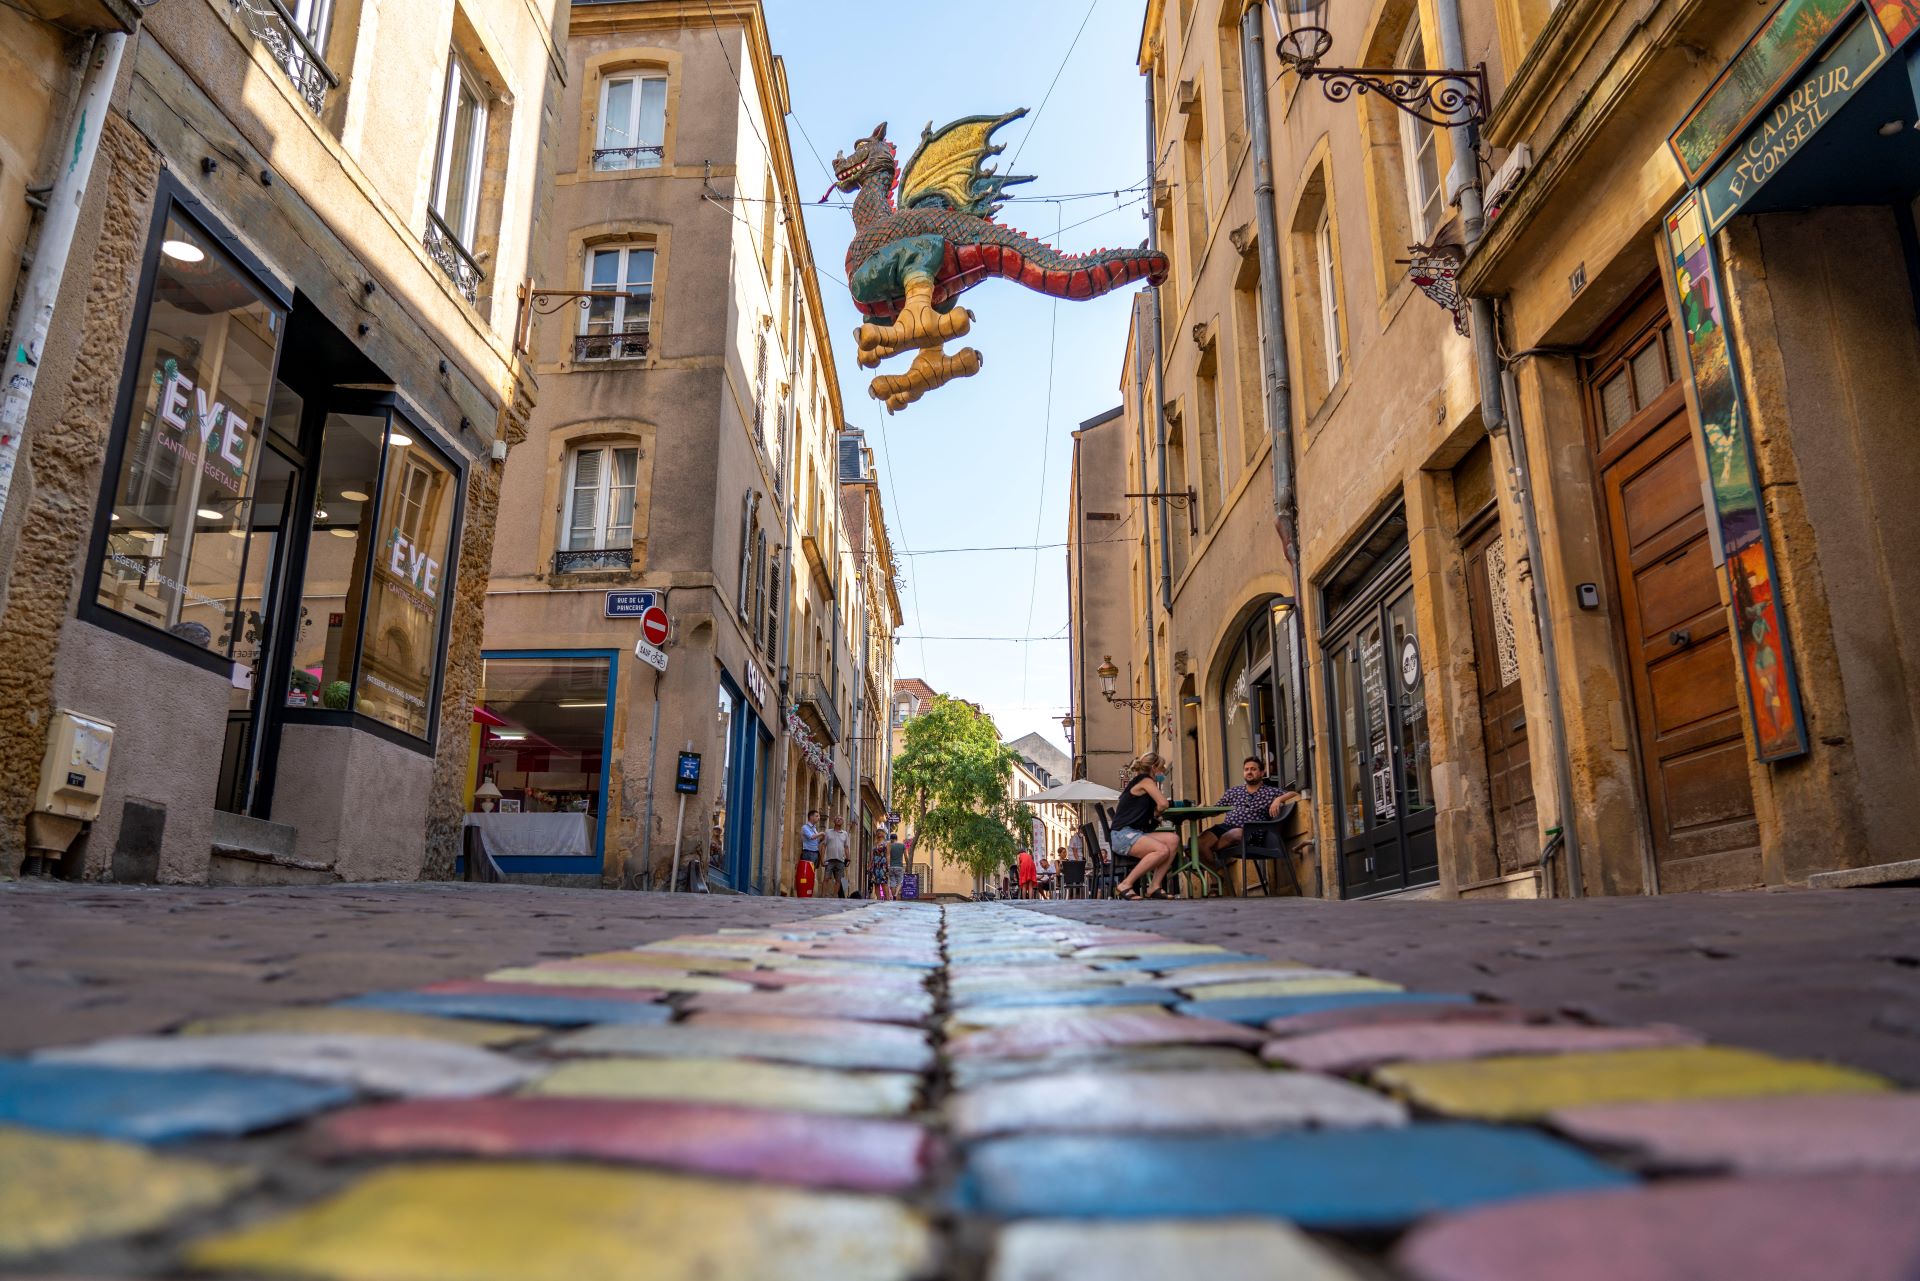 Der berühmte Drache von Metz schwebt über einer bunten Straße. Gelbe Gebäude und bemalte Straßen sorgen für eine verspielte Atmosphäre.